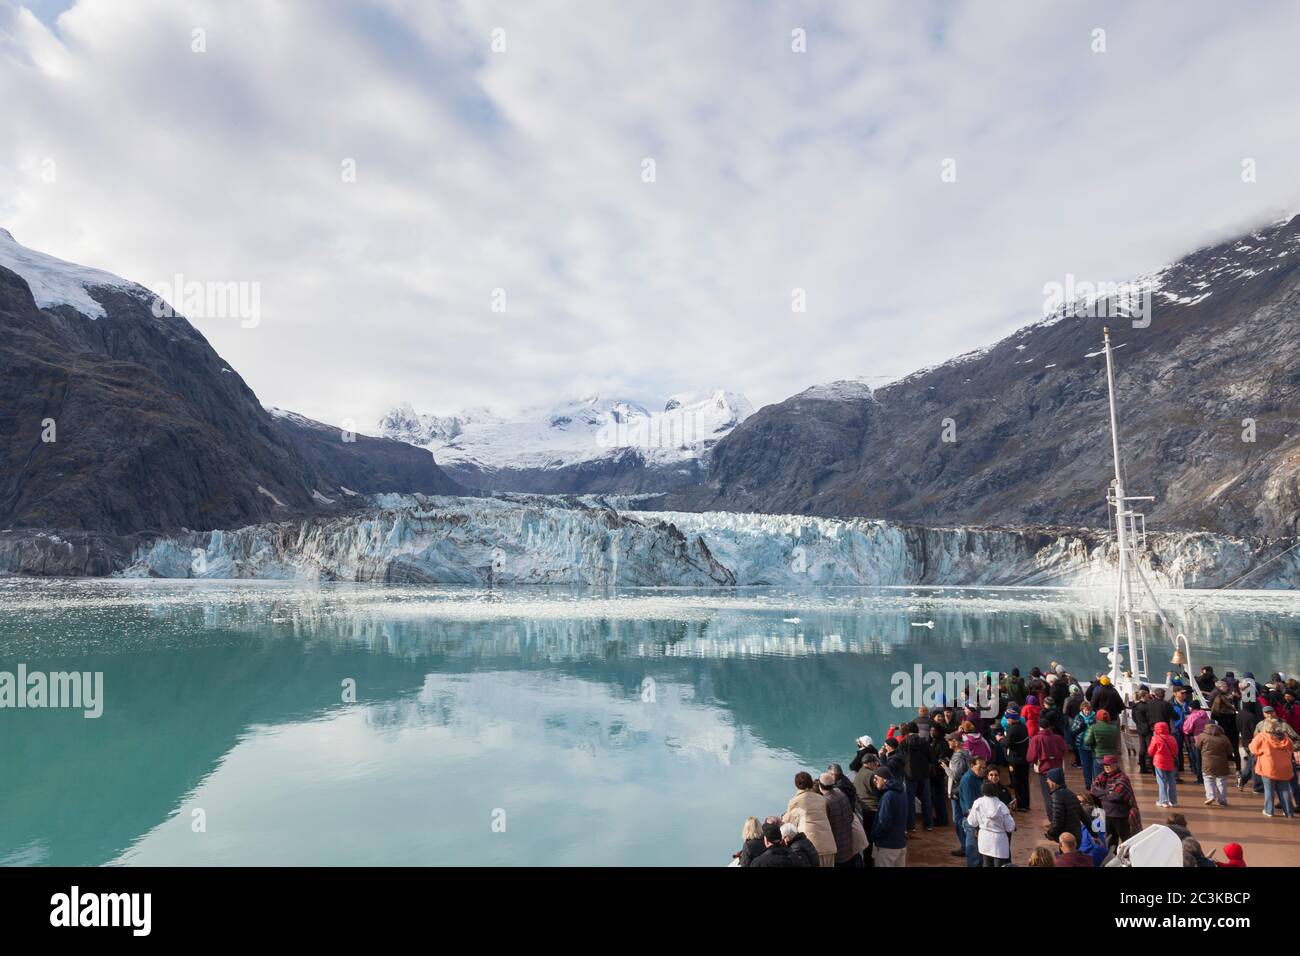 Besucher versammelten sich am Bug des MS Westerdam Kreuzfahrtschiffes, um den Johns Hopkins Glacier vom Johns Hopkins Inlet im Glacier Bay National Park und P aus zu besichtigen Stockfoto